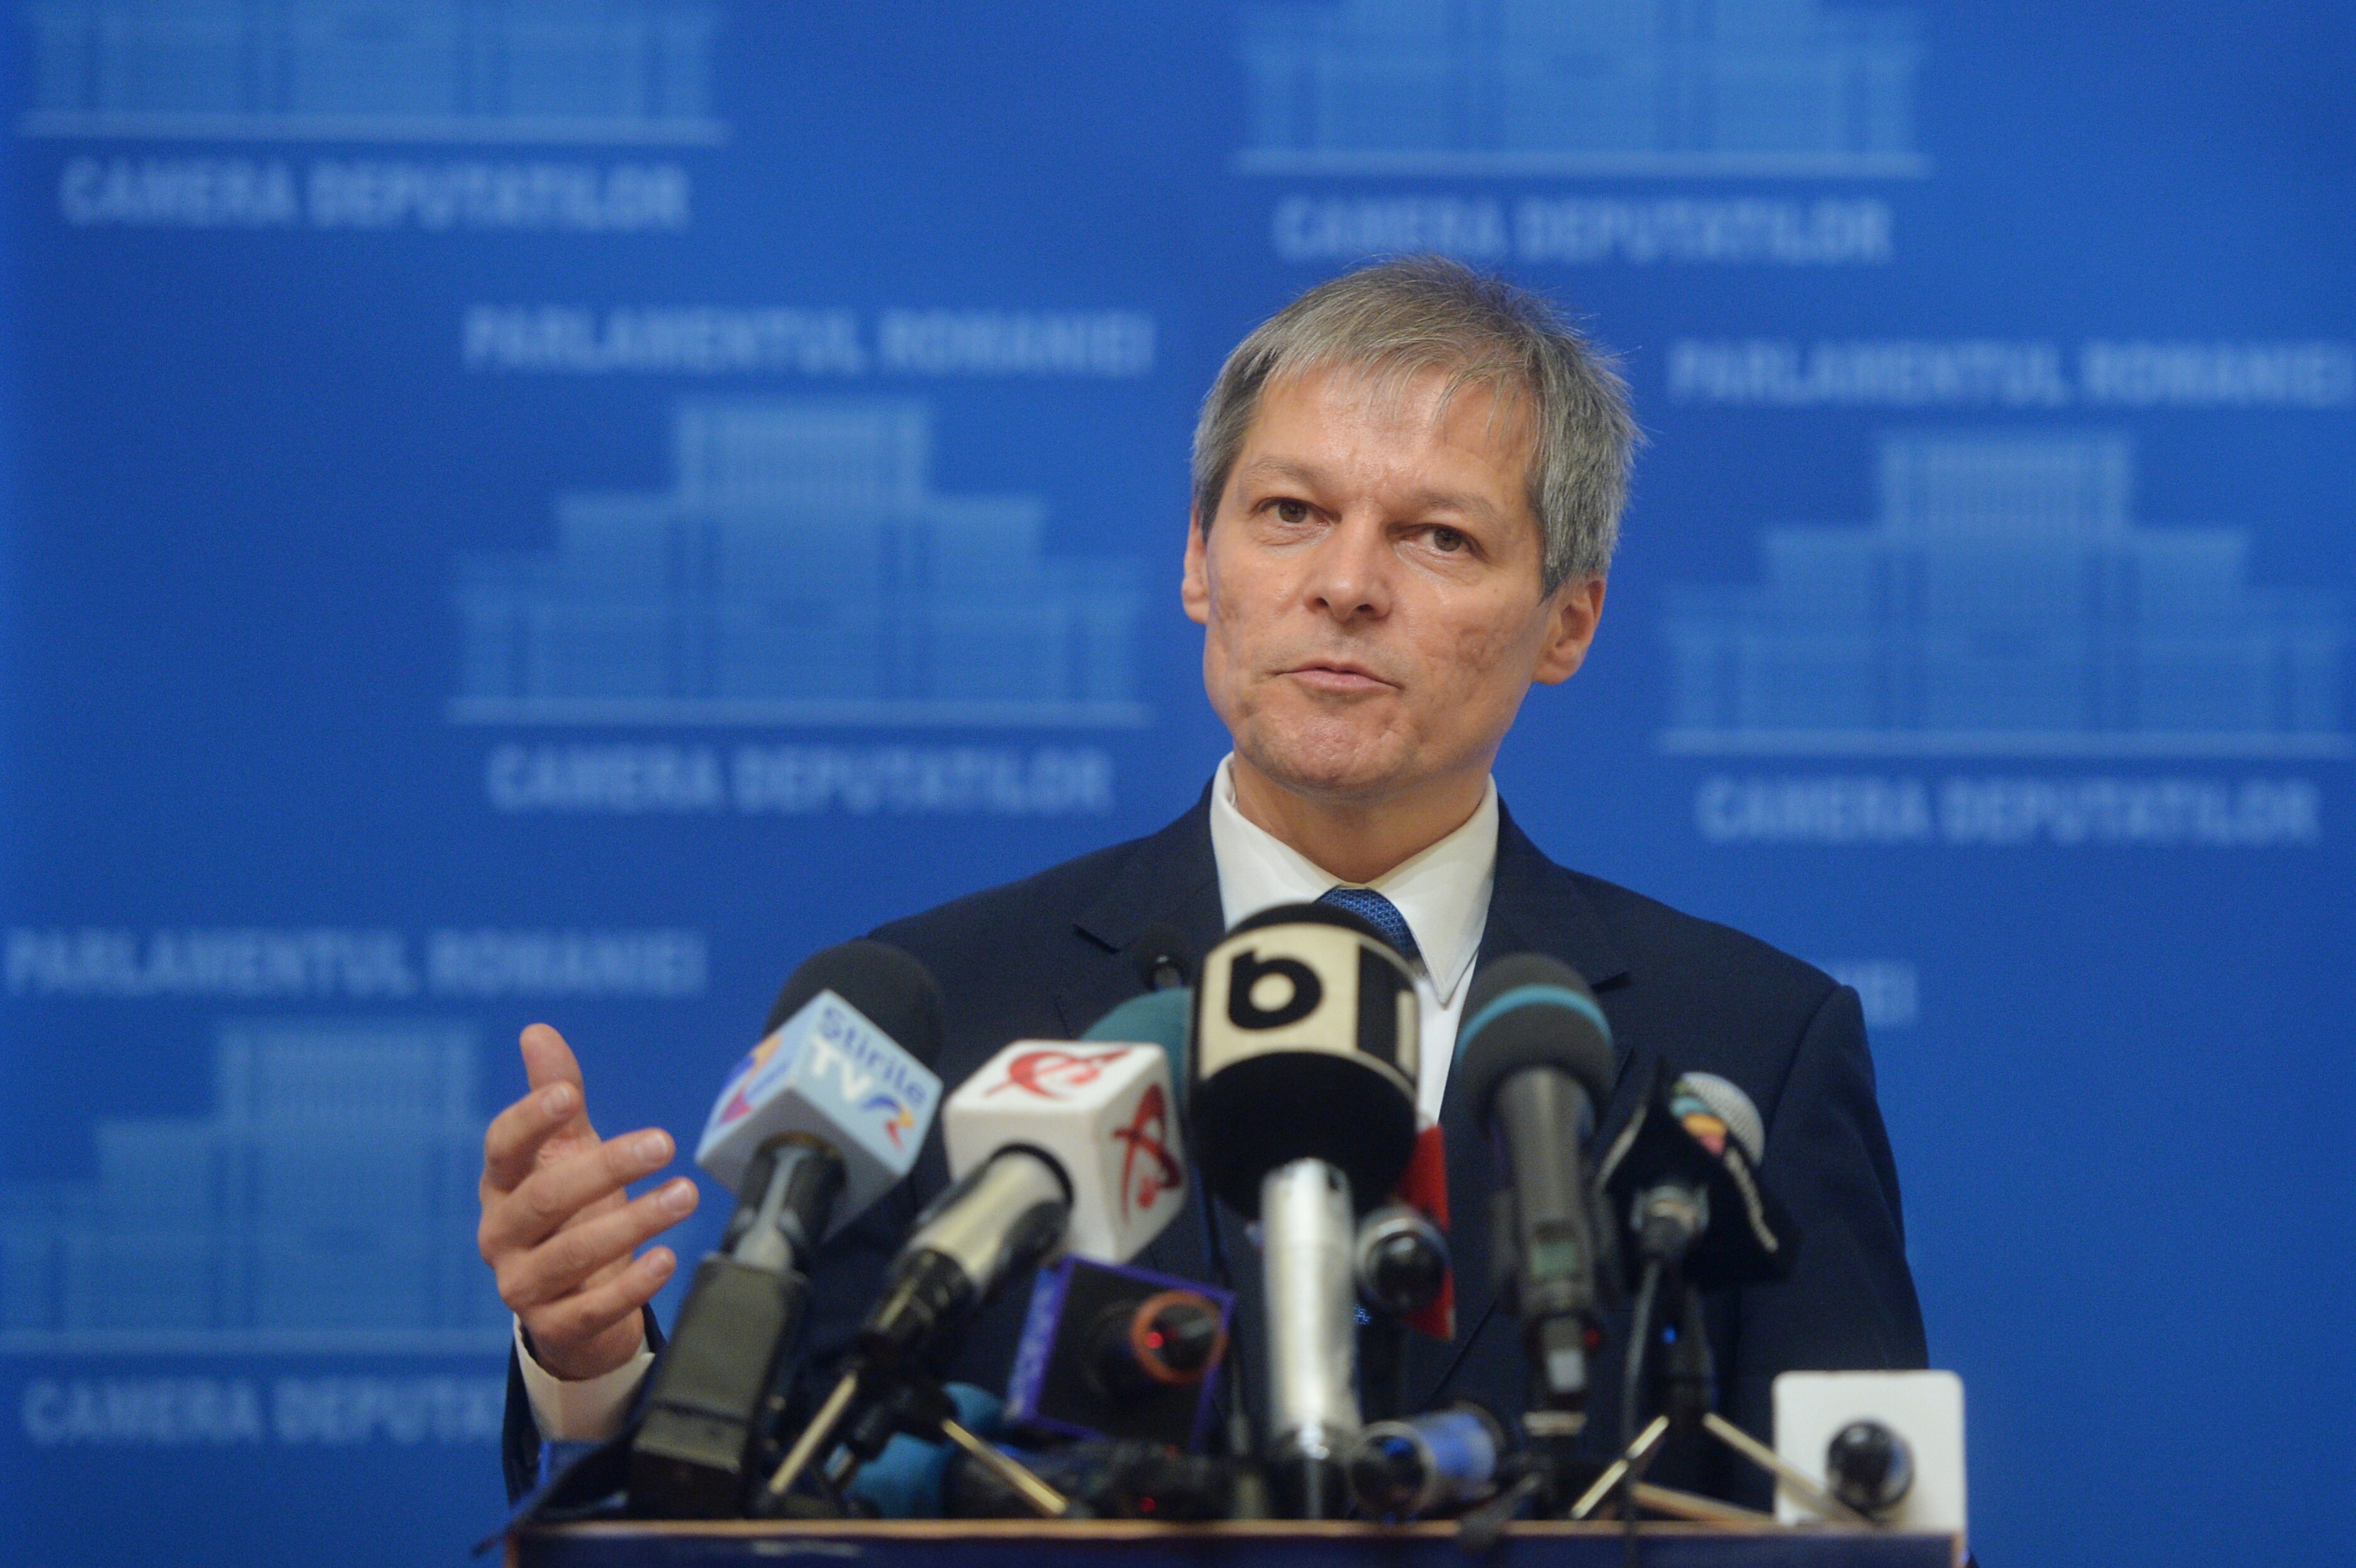 Cioloş: L-am ales pe Dâncu pentru experienţă şi viziune, nu pentru calitatea de fost membru PSD